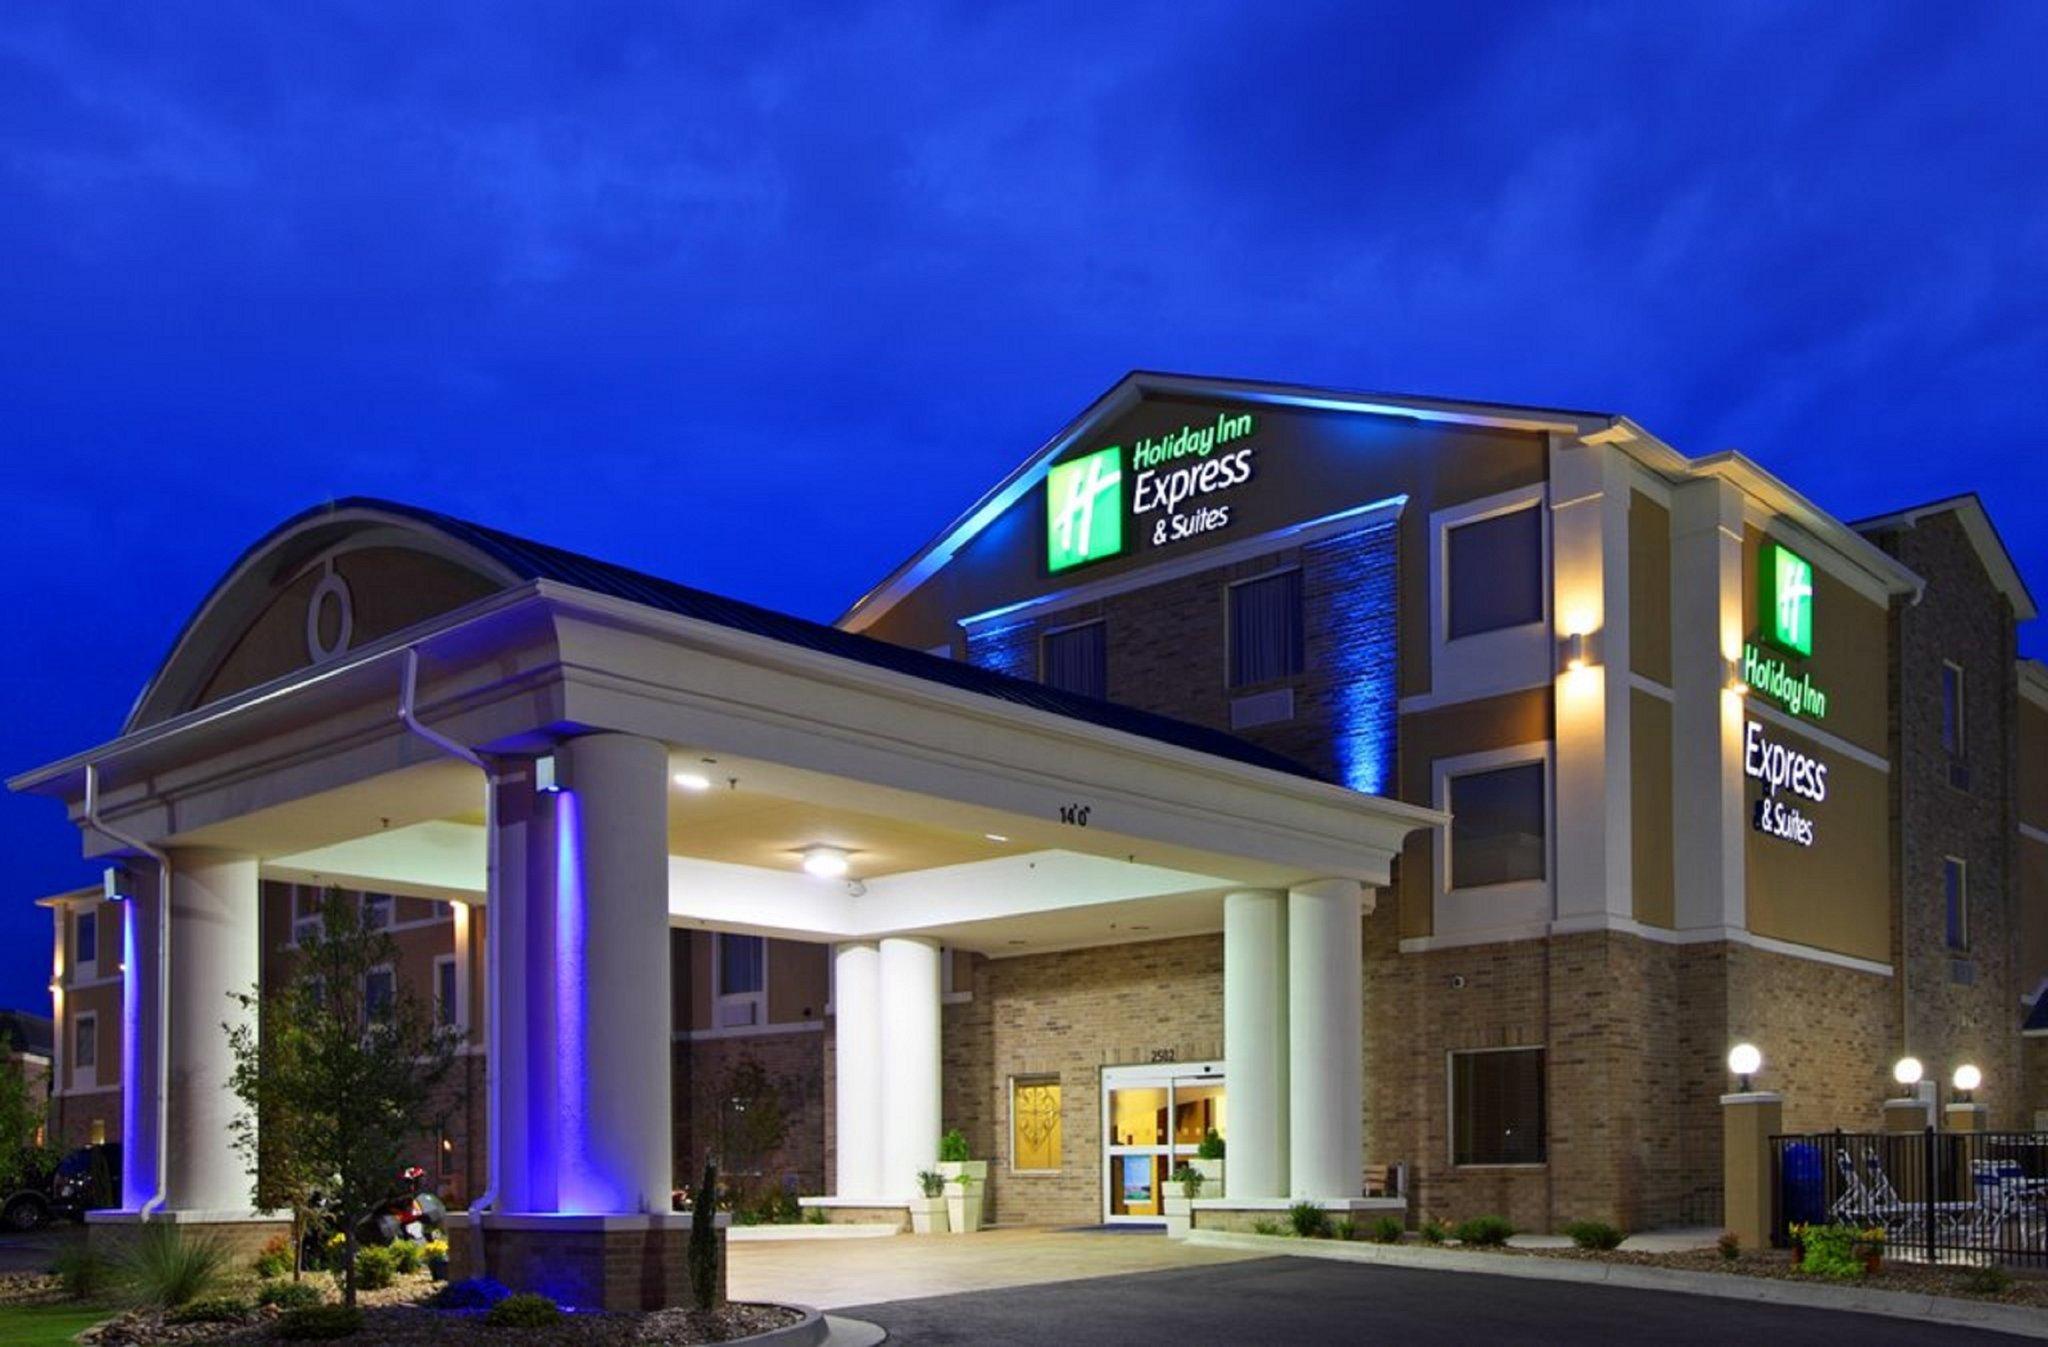 Holiday Inn Express Gloucester in Newport News, VA